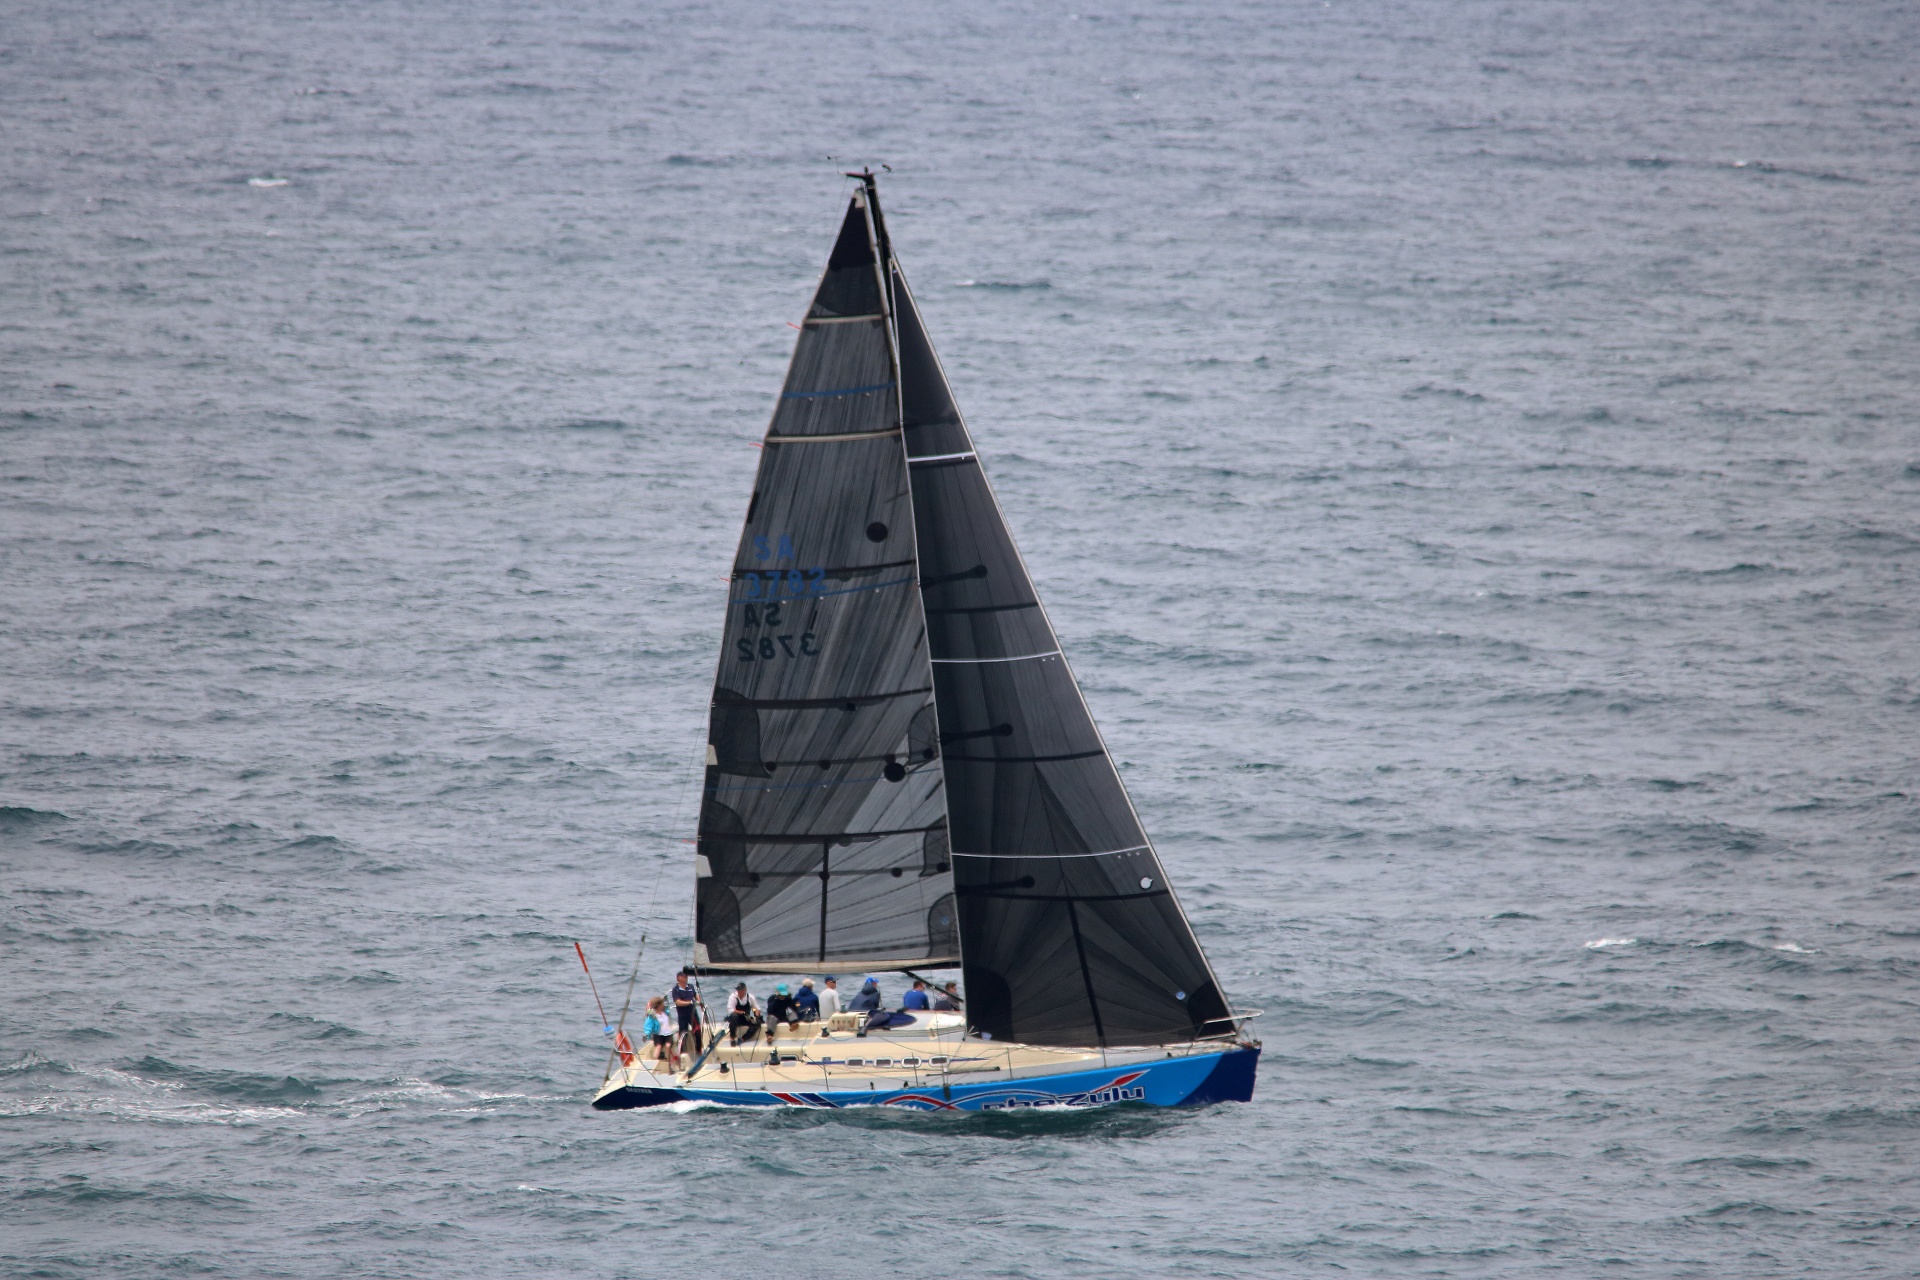 Jachta s posádkou plující na moři